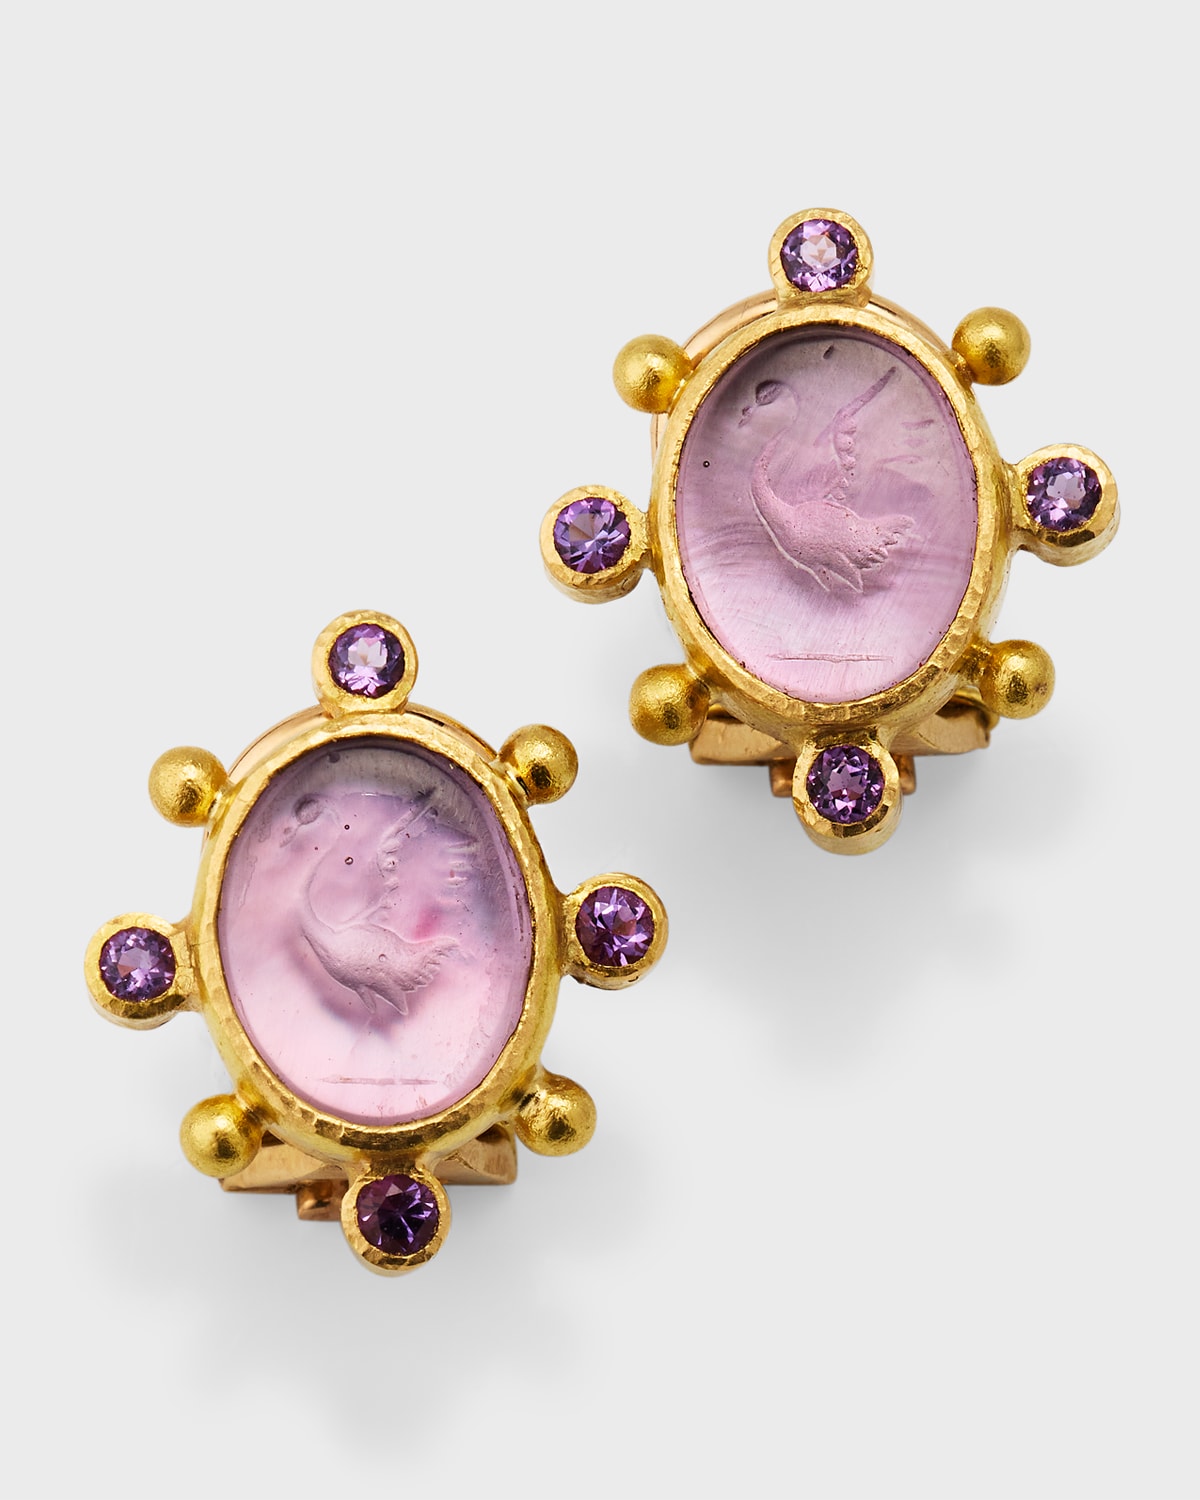 Elizabeth Locke 19k Venetian Glass Intaglio Oval Crane Earrings With 2.5mm Amethyst And Dots, Mulberry